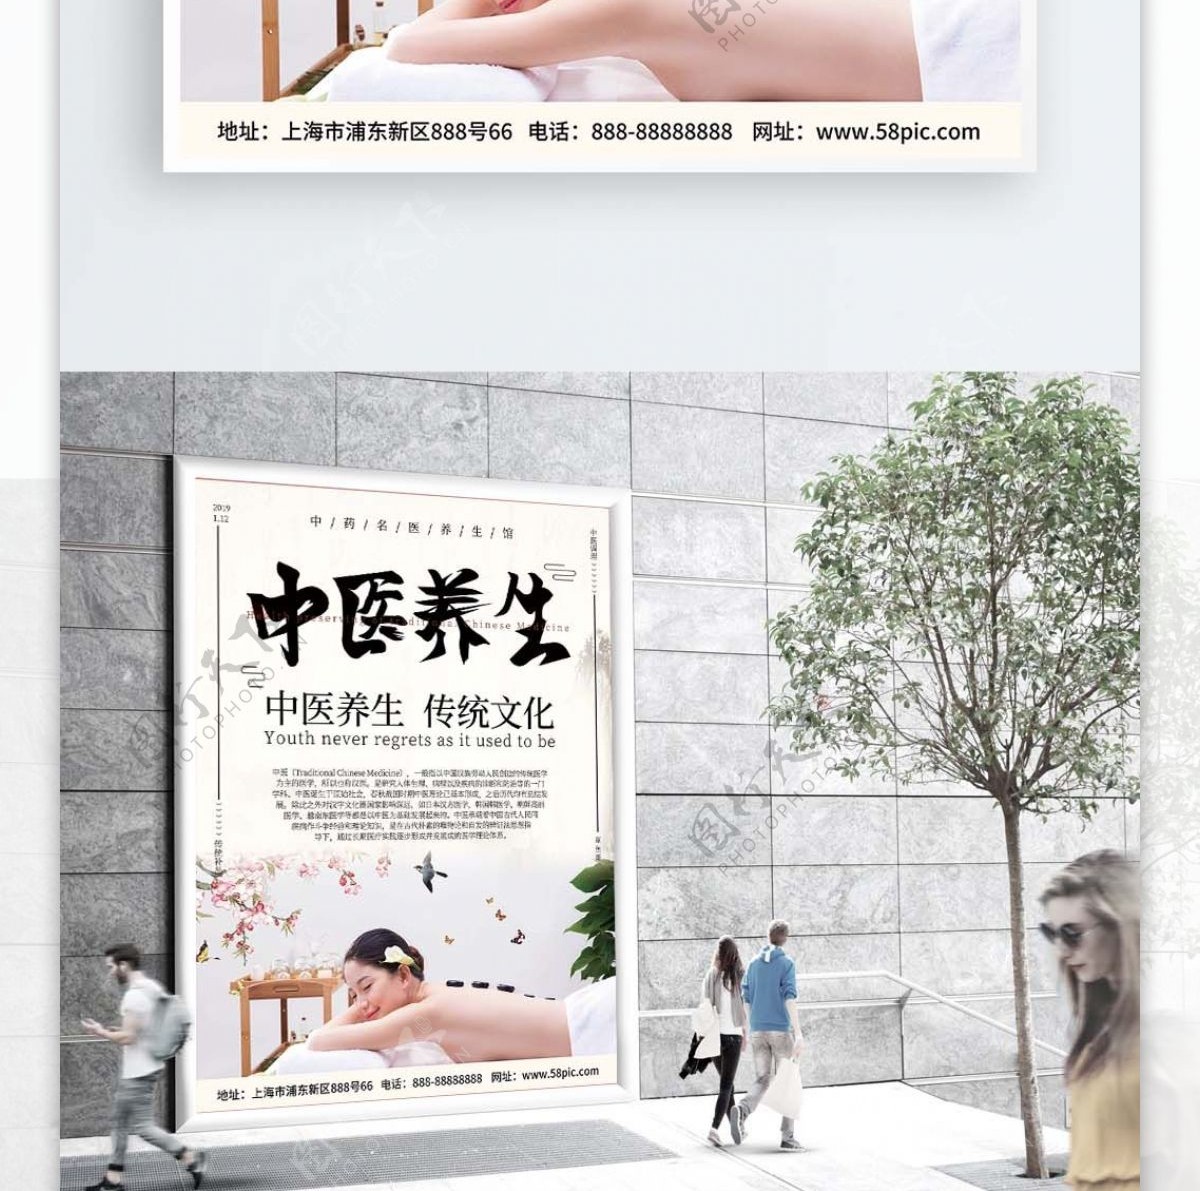 中国古风中医传统养生按摩宣传海报